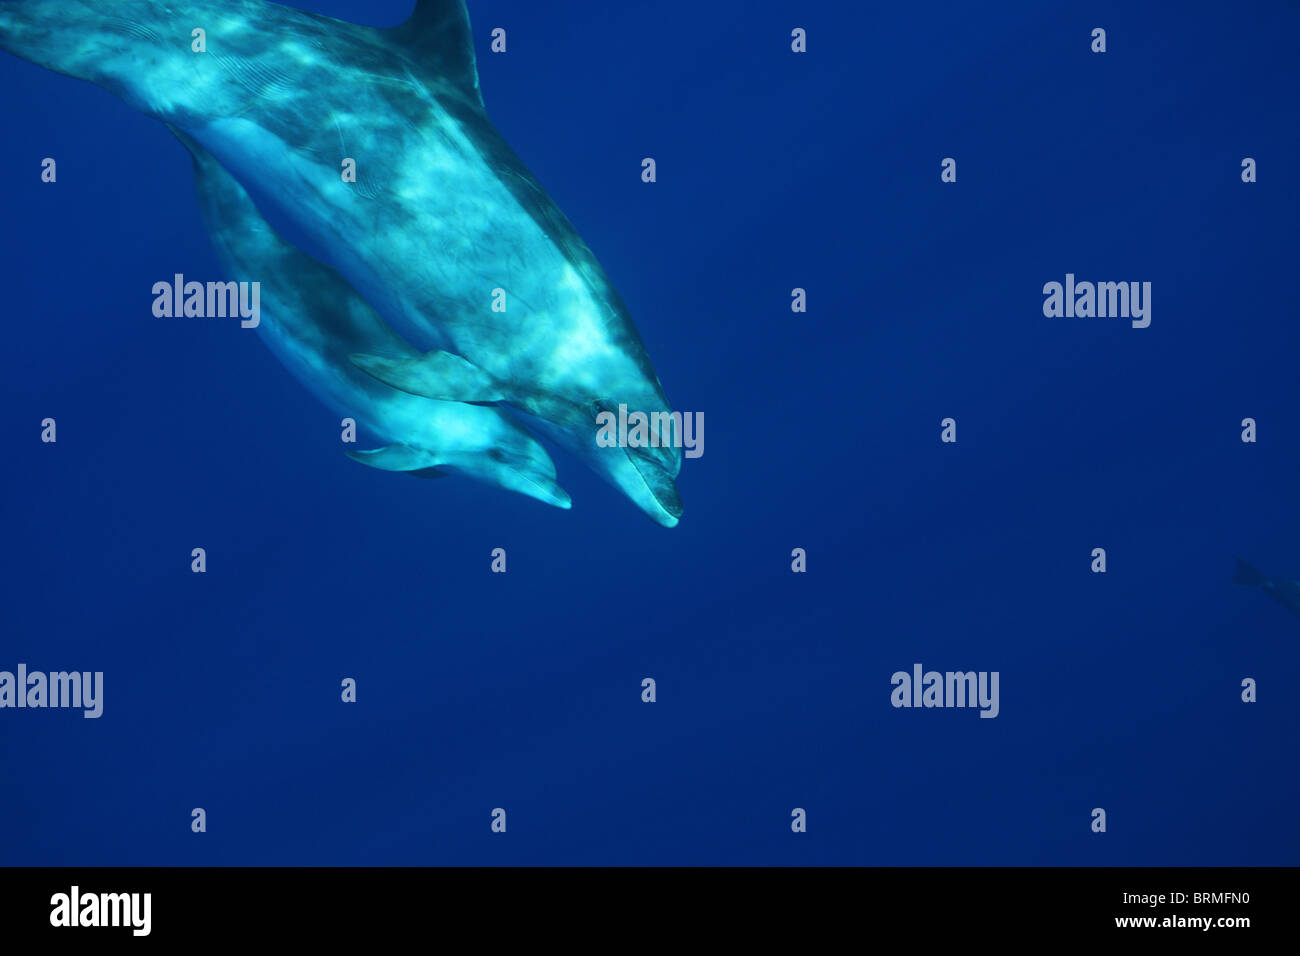 La maternidad, la maternidad: la madre y el ternero delfines mulares en el mar abierto de la isla de Madeira, avistamiento de delfines Foto de stock